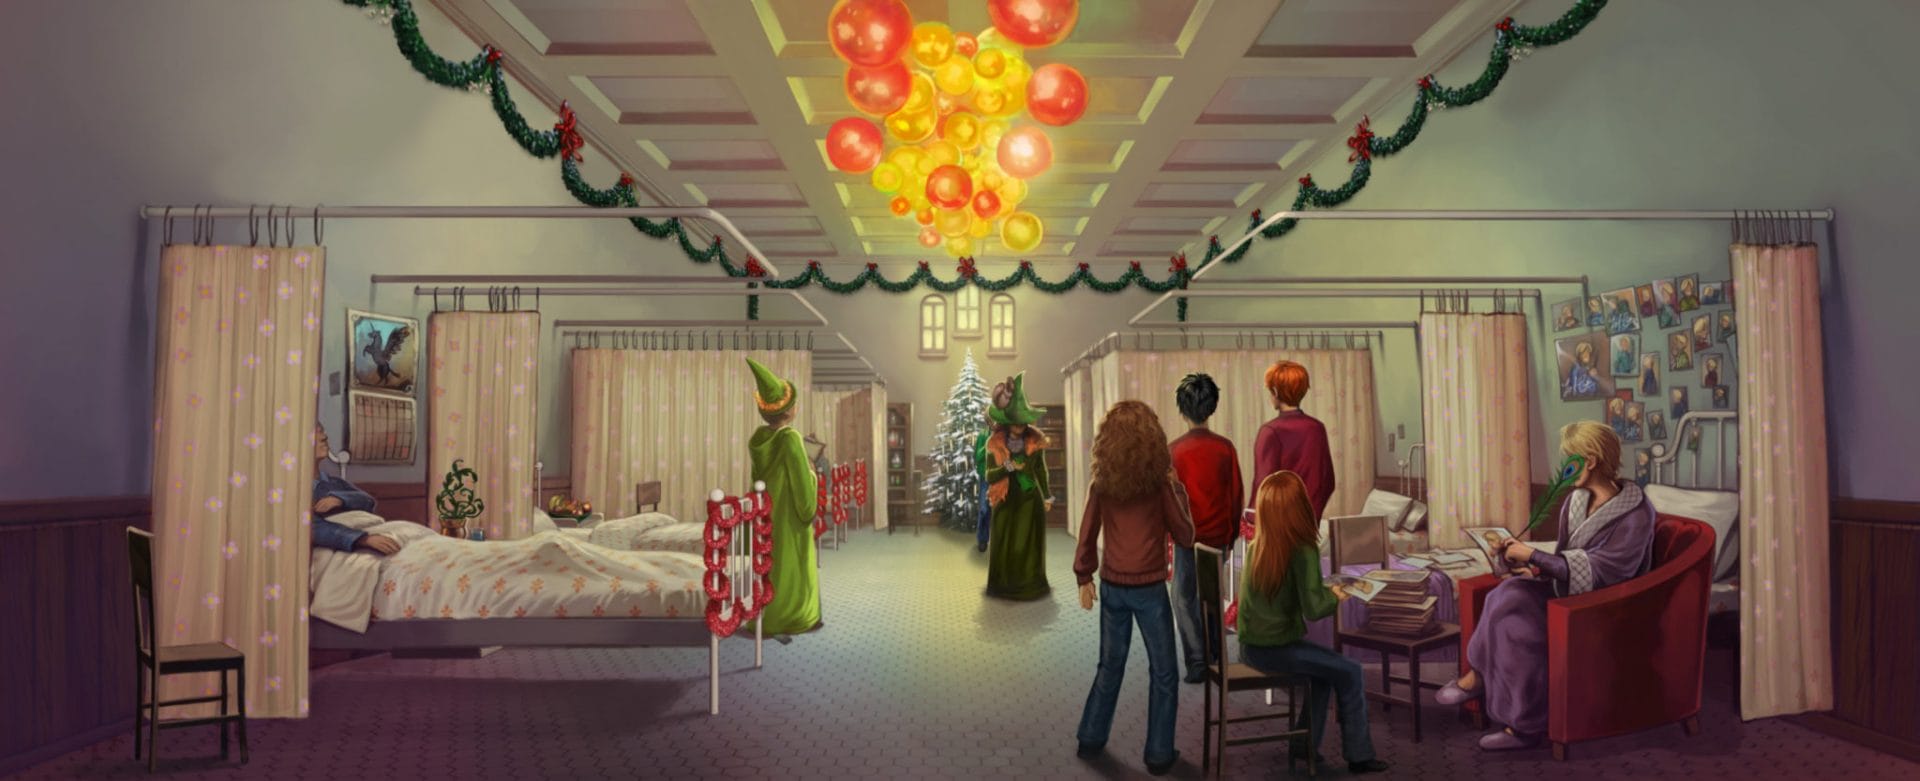 De costas, Hermione, Harry, Rony e Gina visitam Arthur Weasley no Hospital St. Mungus, decorado para o Natal. Todos estão olhando para a avó de Neville, no fundo da imagem. A bruxa tem seu rosto encoberto por seu chapéu.